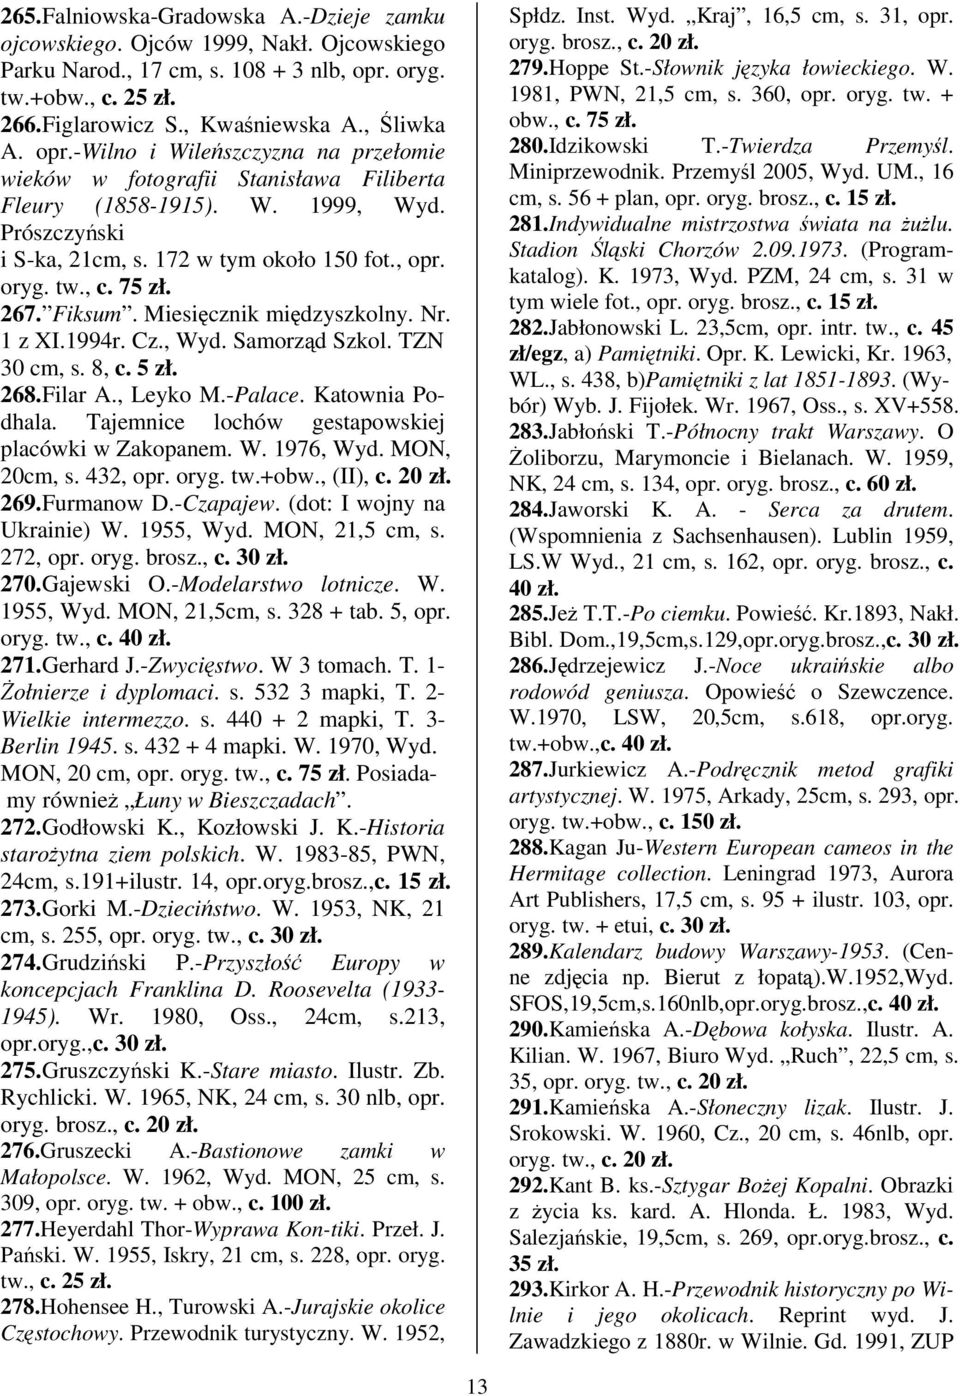 Prószczyski i S-ka, 21cm, s. 172 w tym około 150 fot., opr. oryg. tw., c. 75 267. Fiksum. Miesicznik midzyszkolny. Nr. 1 z XI.1994r. Cz., Wyd. Samorzd Szkol. TZN 30 cm, s. 8, c. 5 268.Filar A.